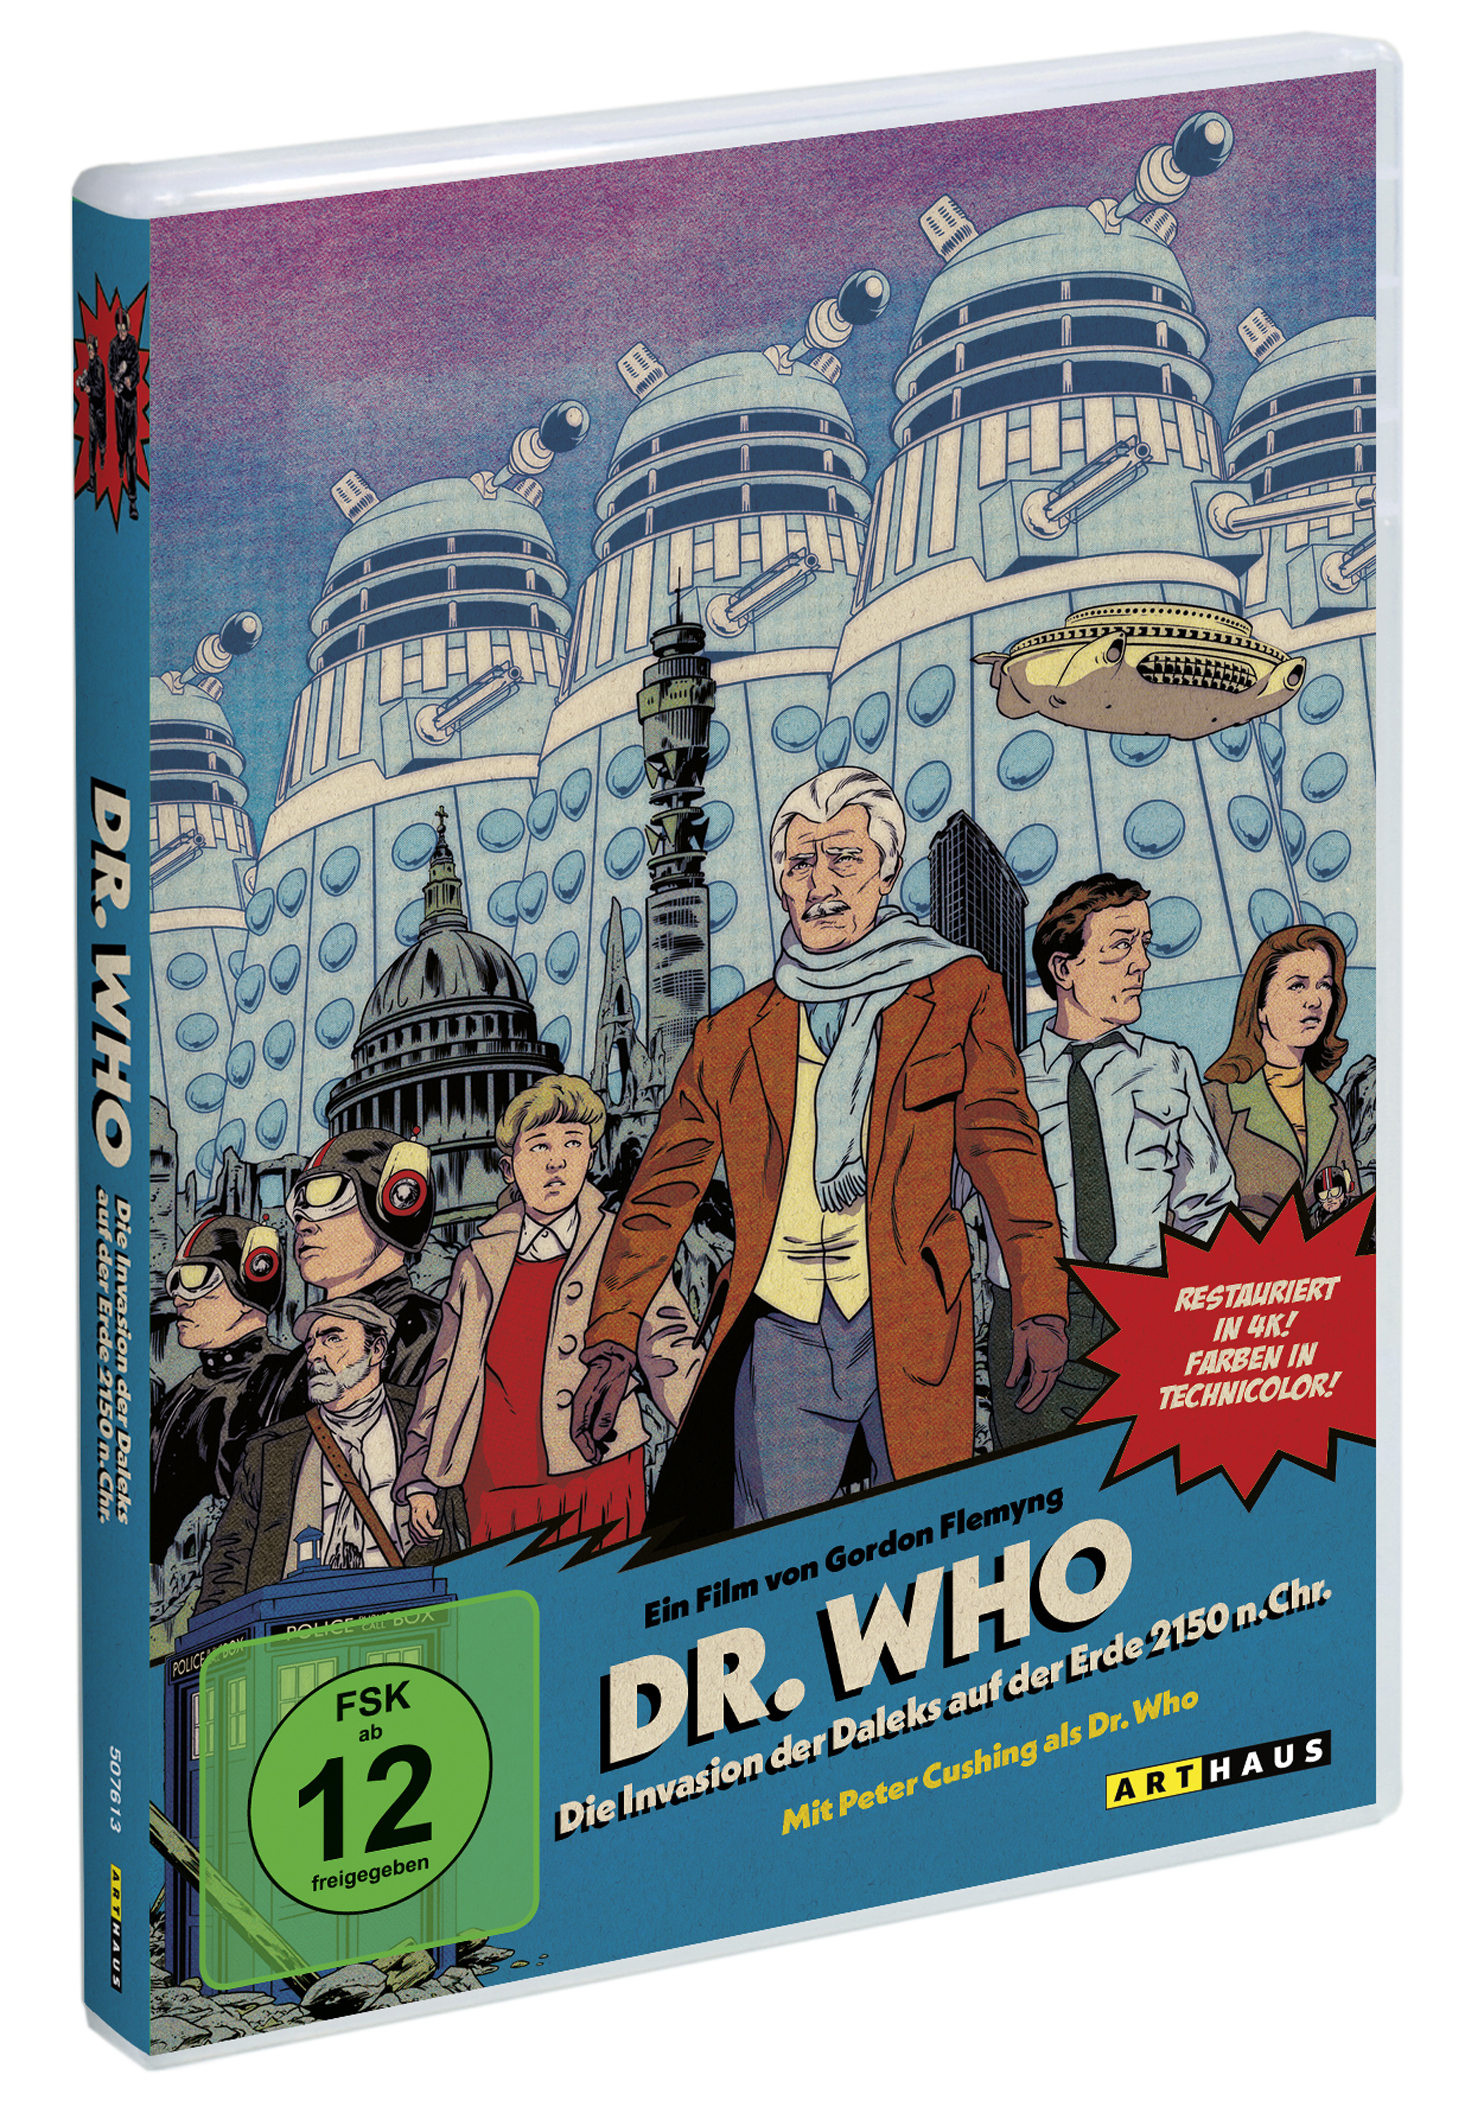 Dr. Who: Die Invasion der Chr. auf Erde 2150 n. der Daleks DVD